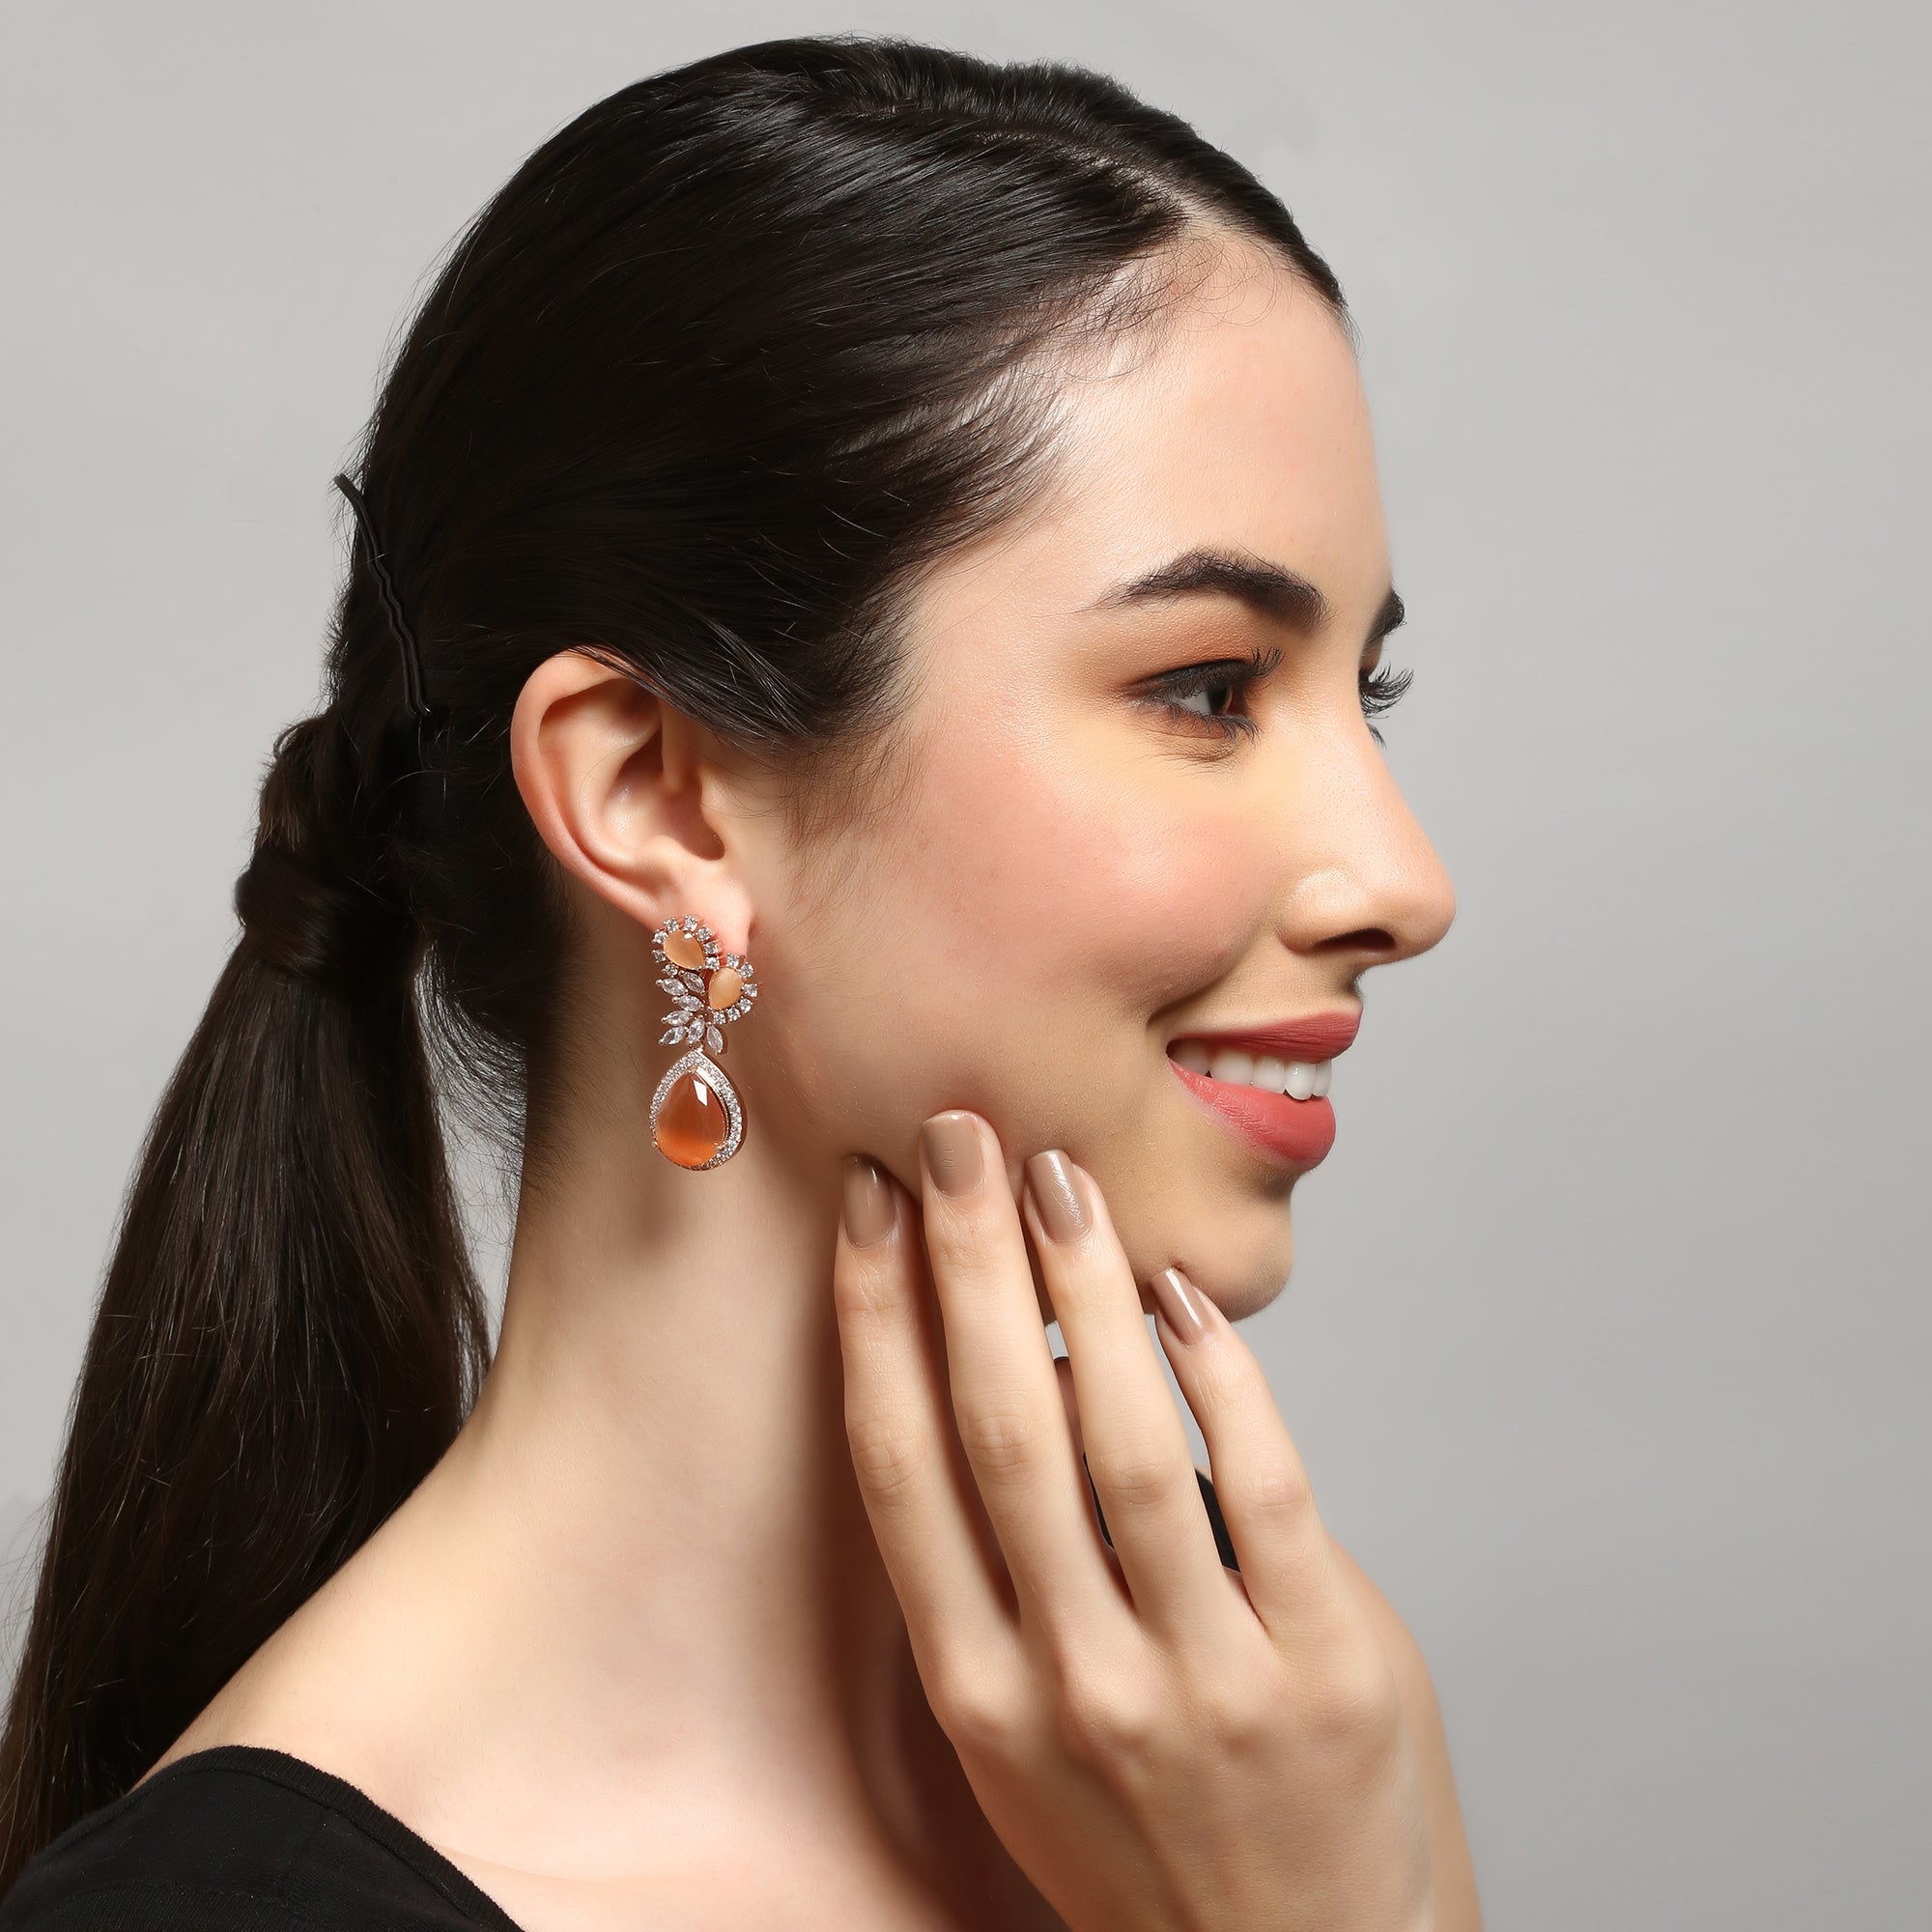 Women's Classsic American Diamond Peach tear drop earrings - Femizen